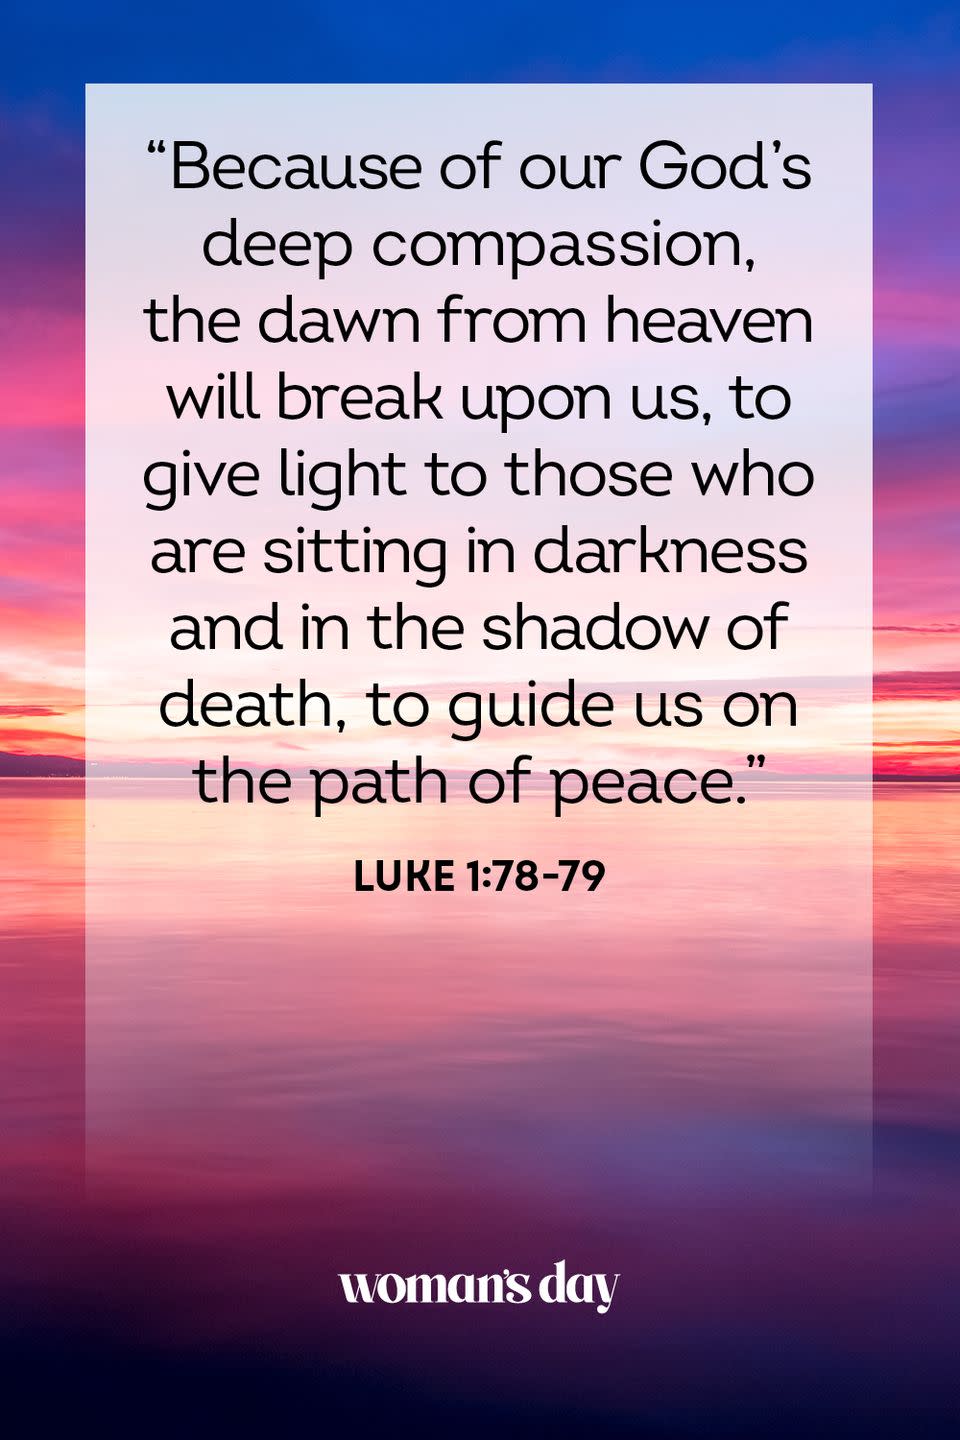 15) Luke 1:78-79